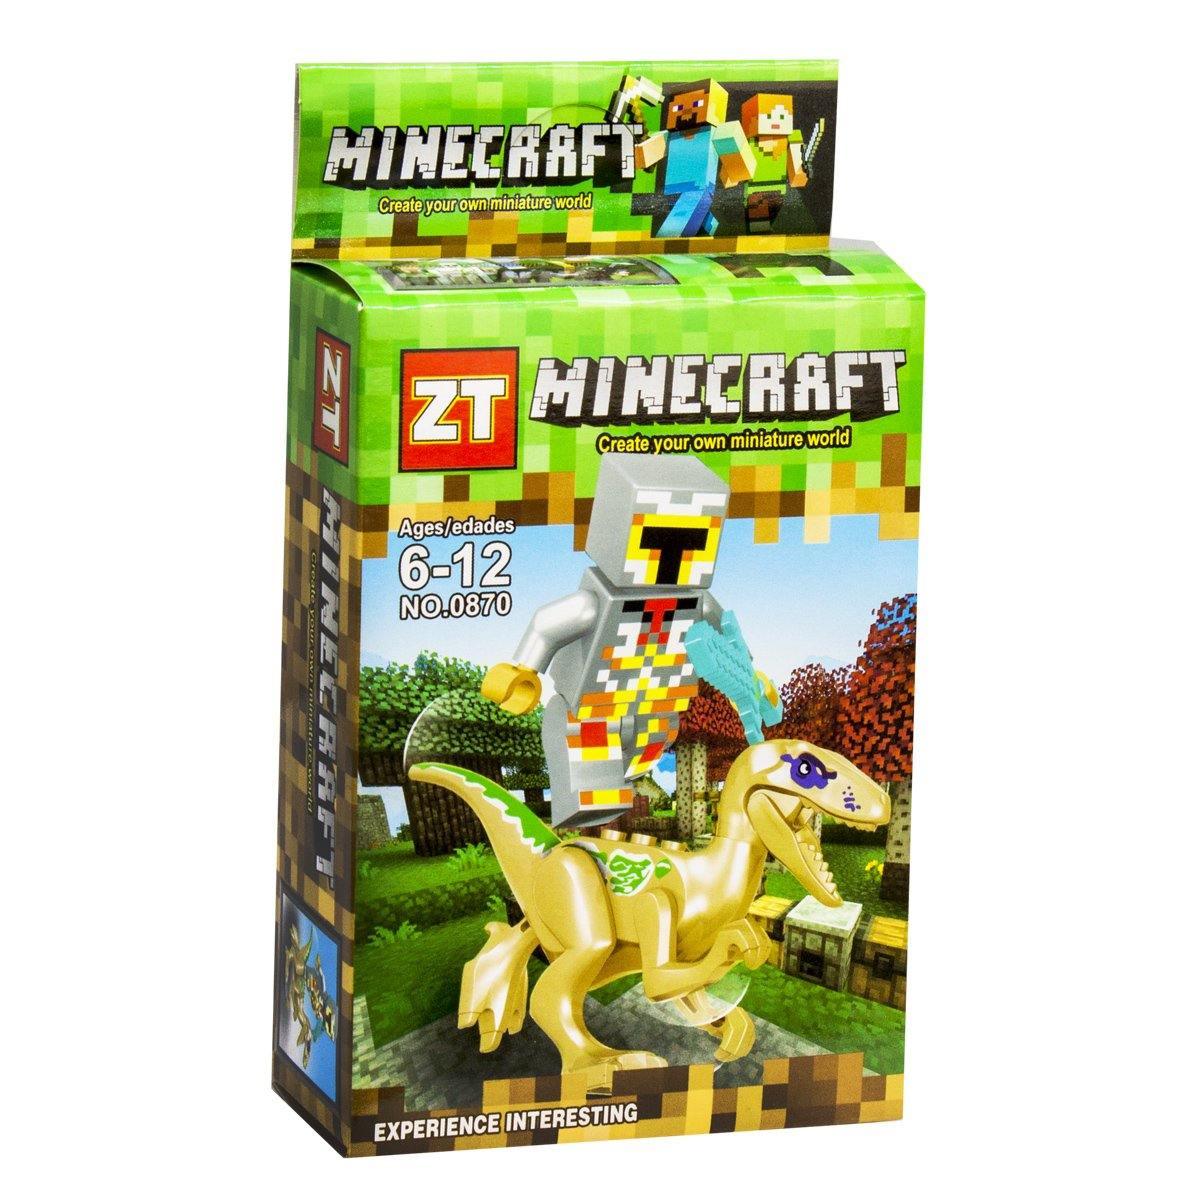 ZT Minecraft Building Blocks - Swordsman - BumbleToys - 5-7 Years, Boys, LEGO, Toy Land